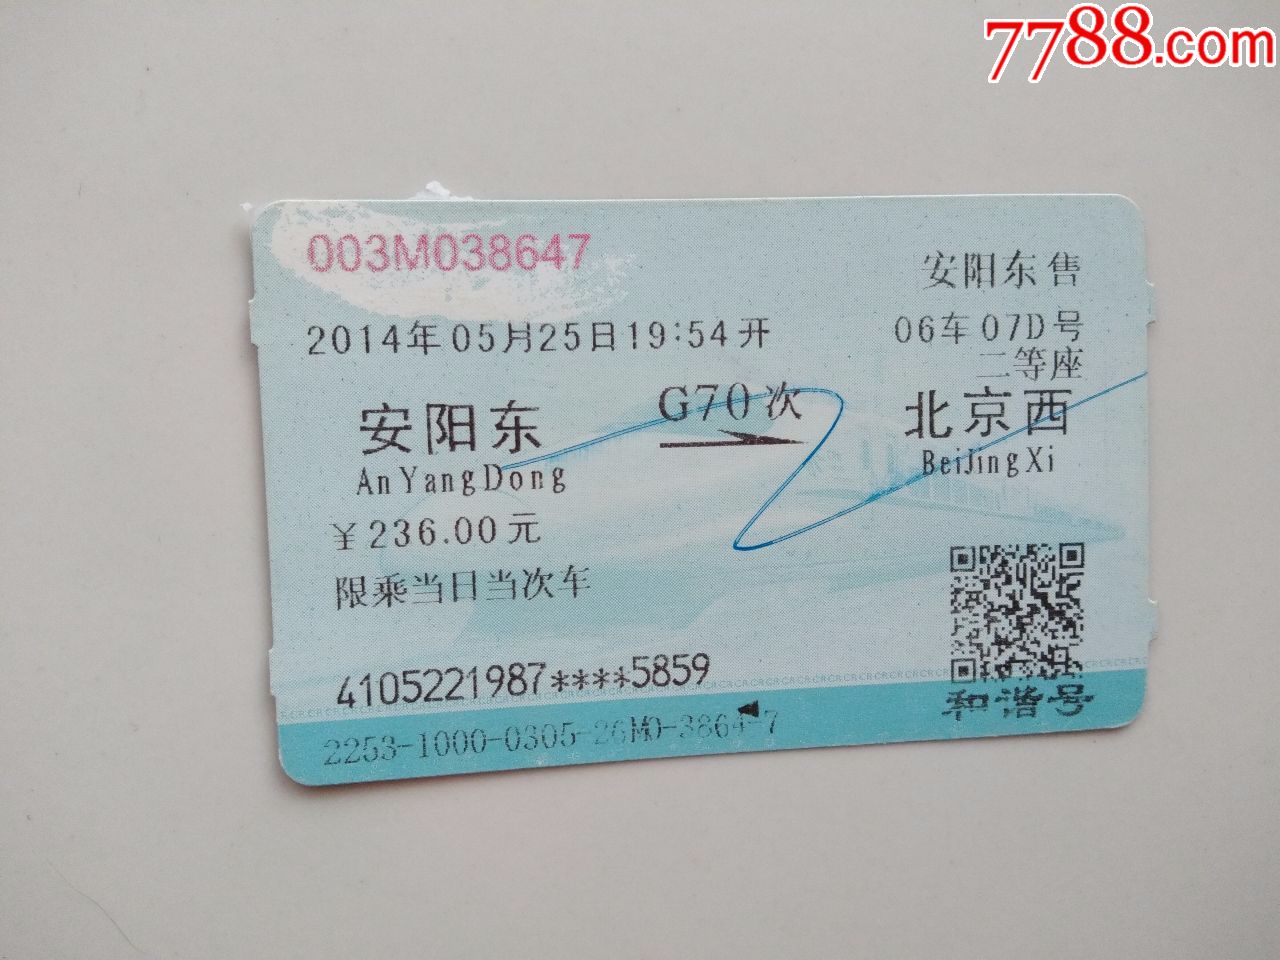 2022年火车票照片图片